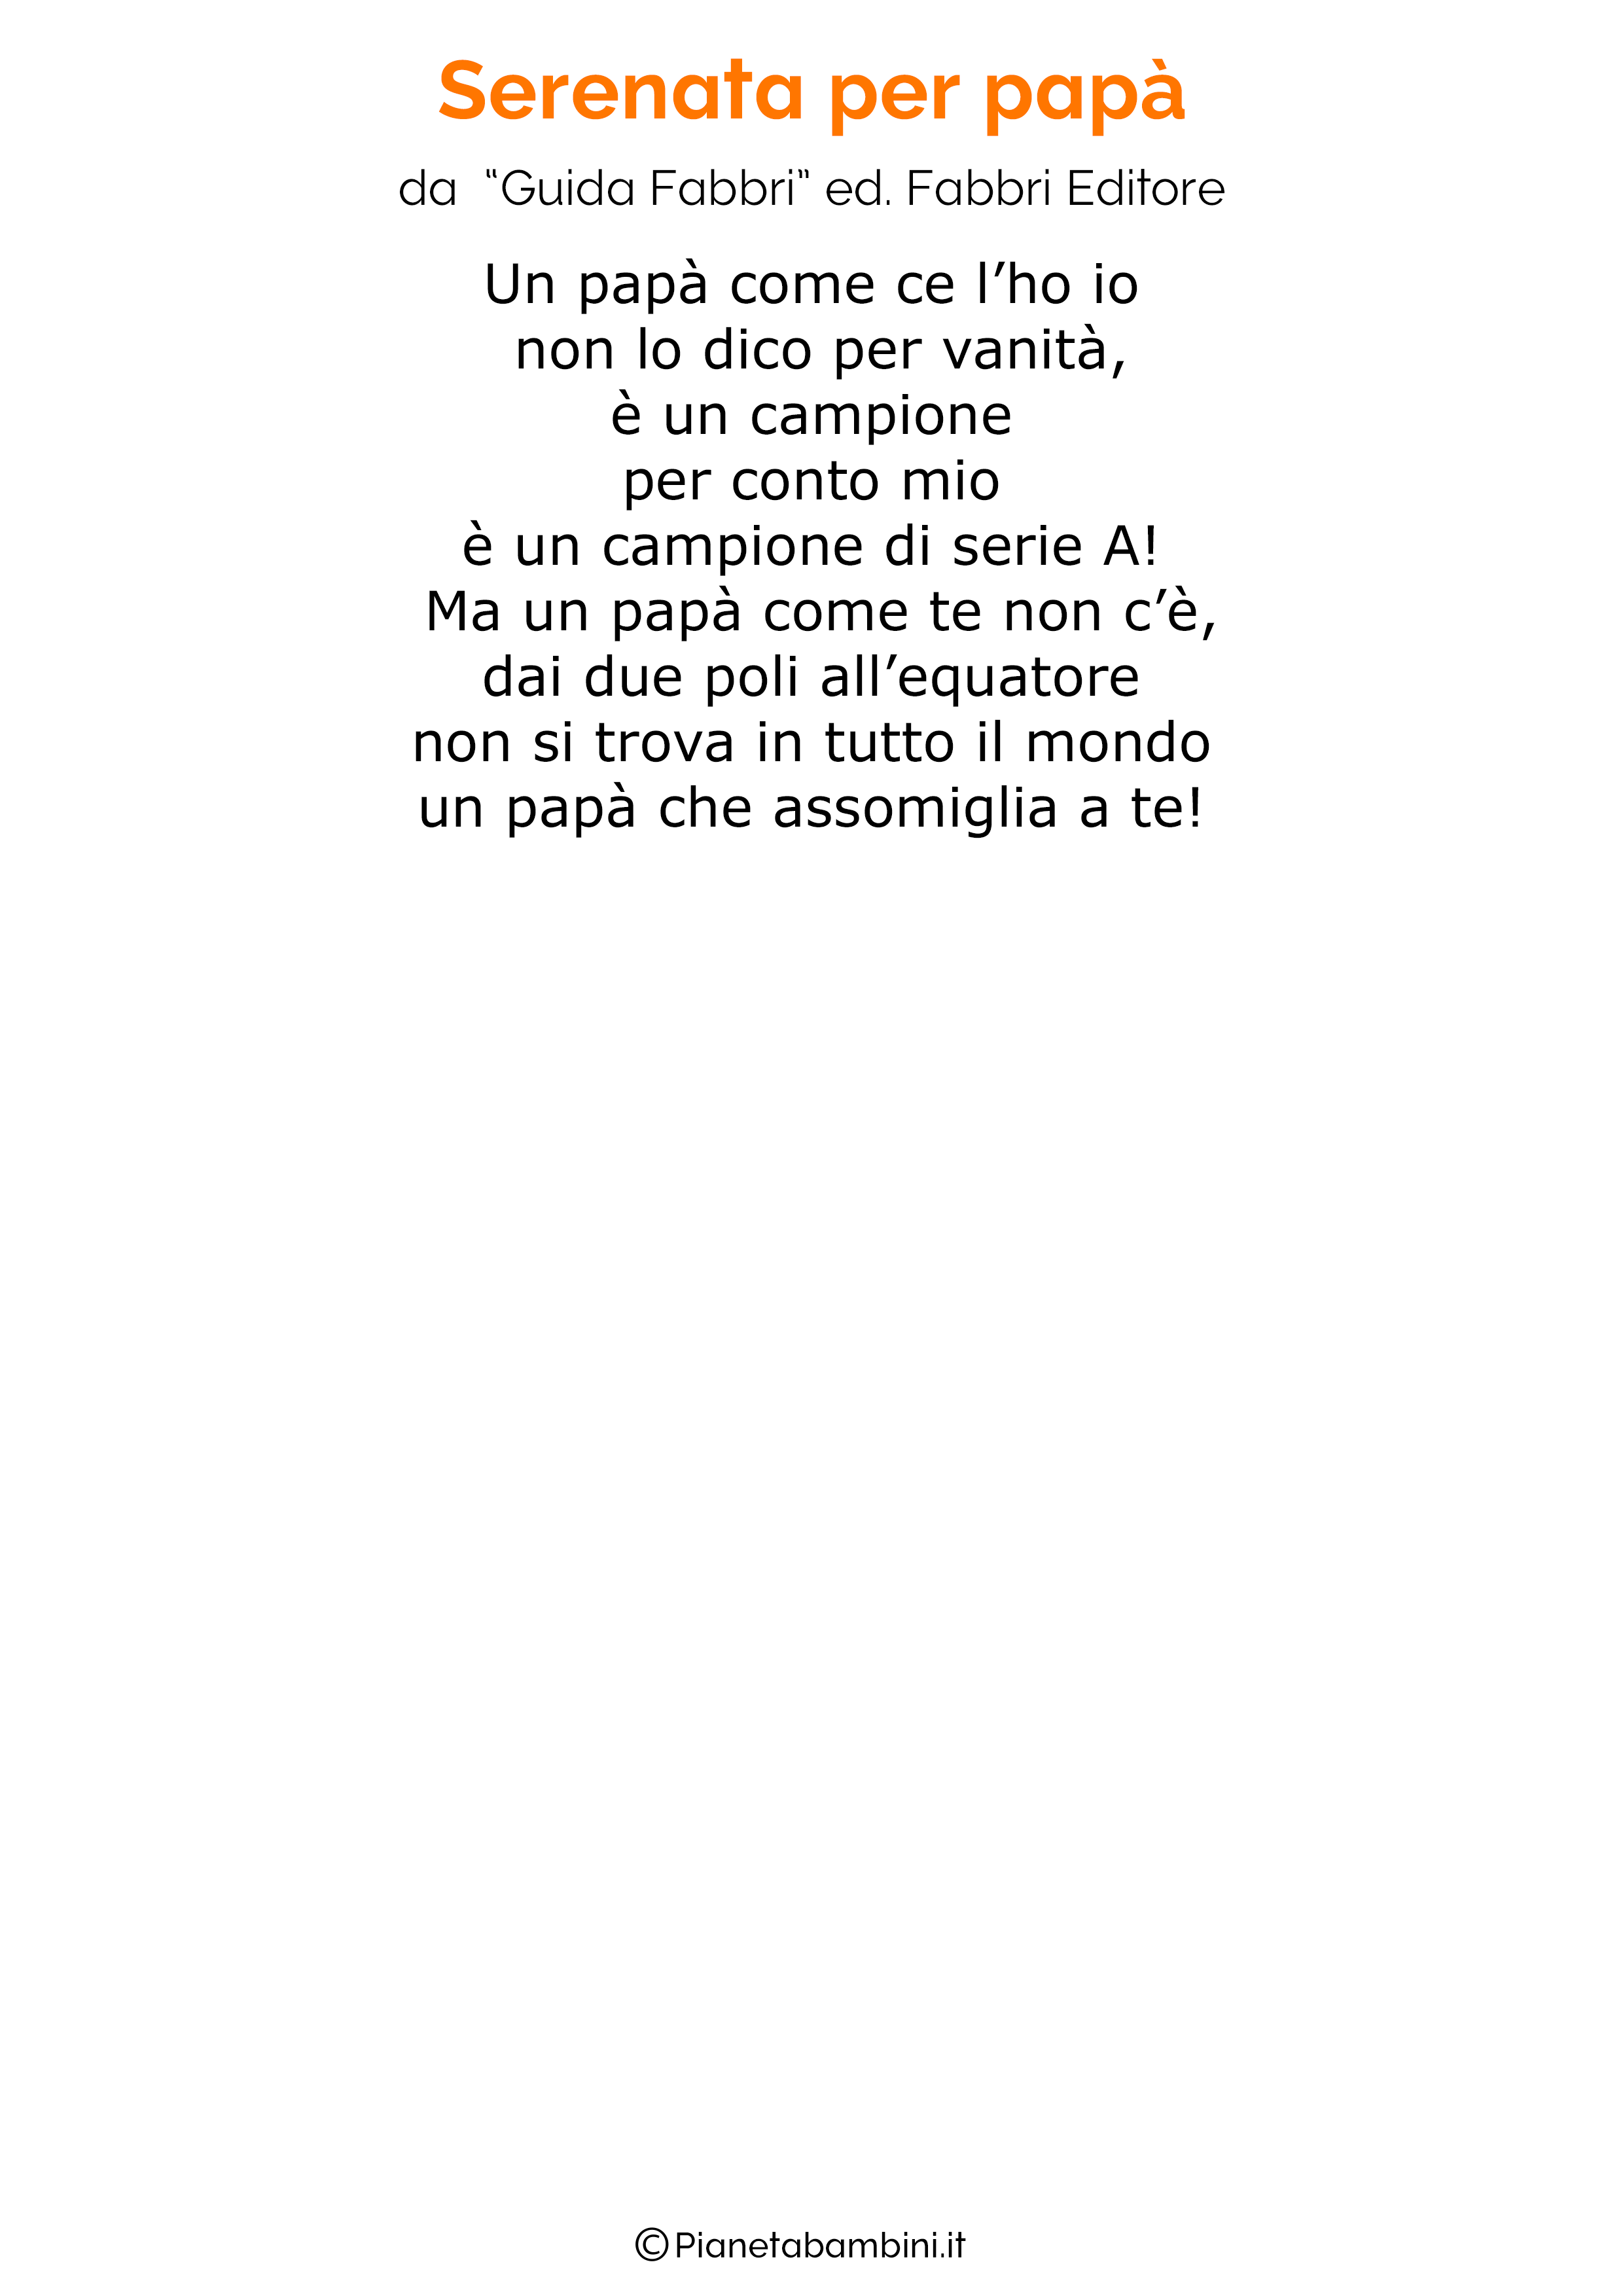 Poesia per la festa del papa per bambini 44